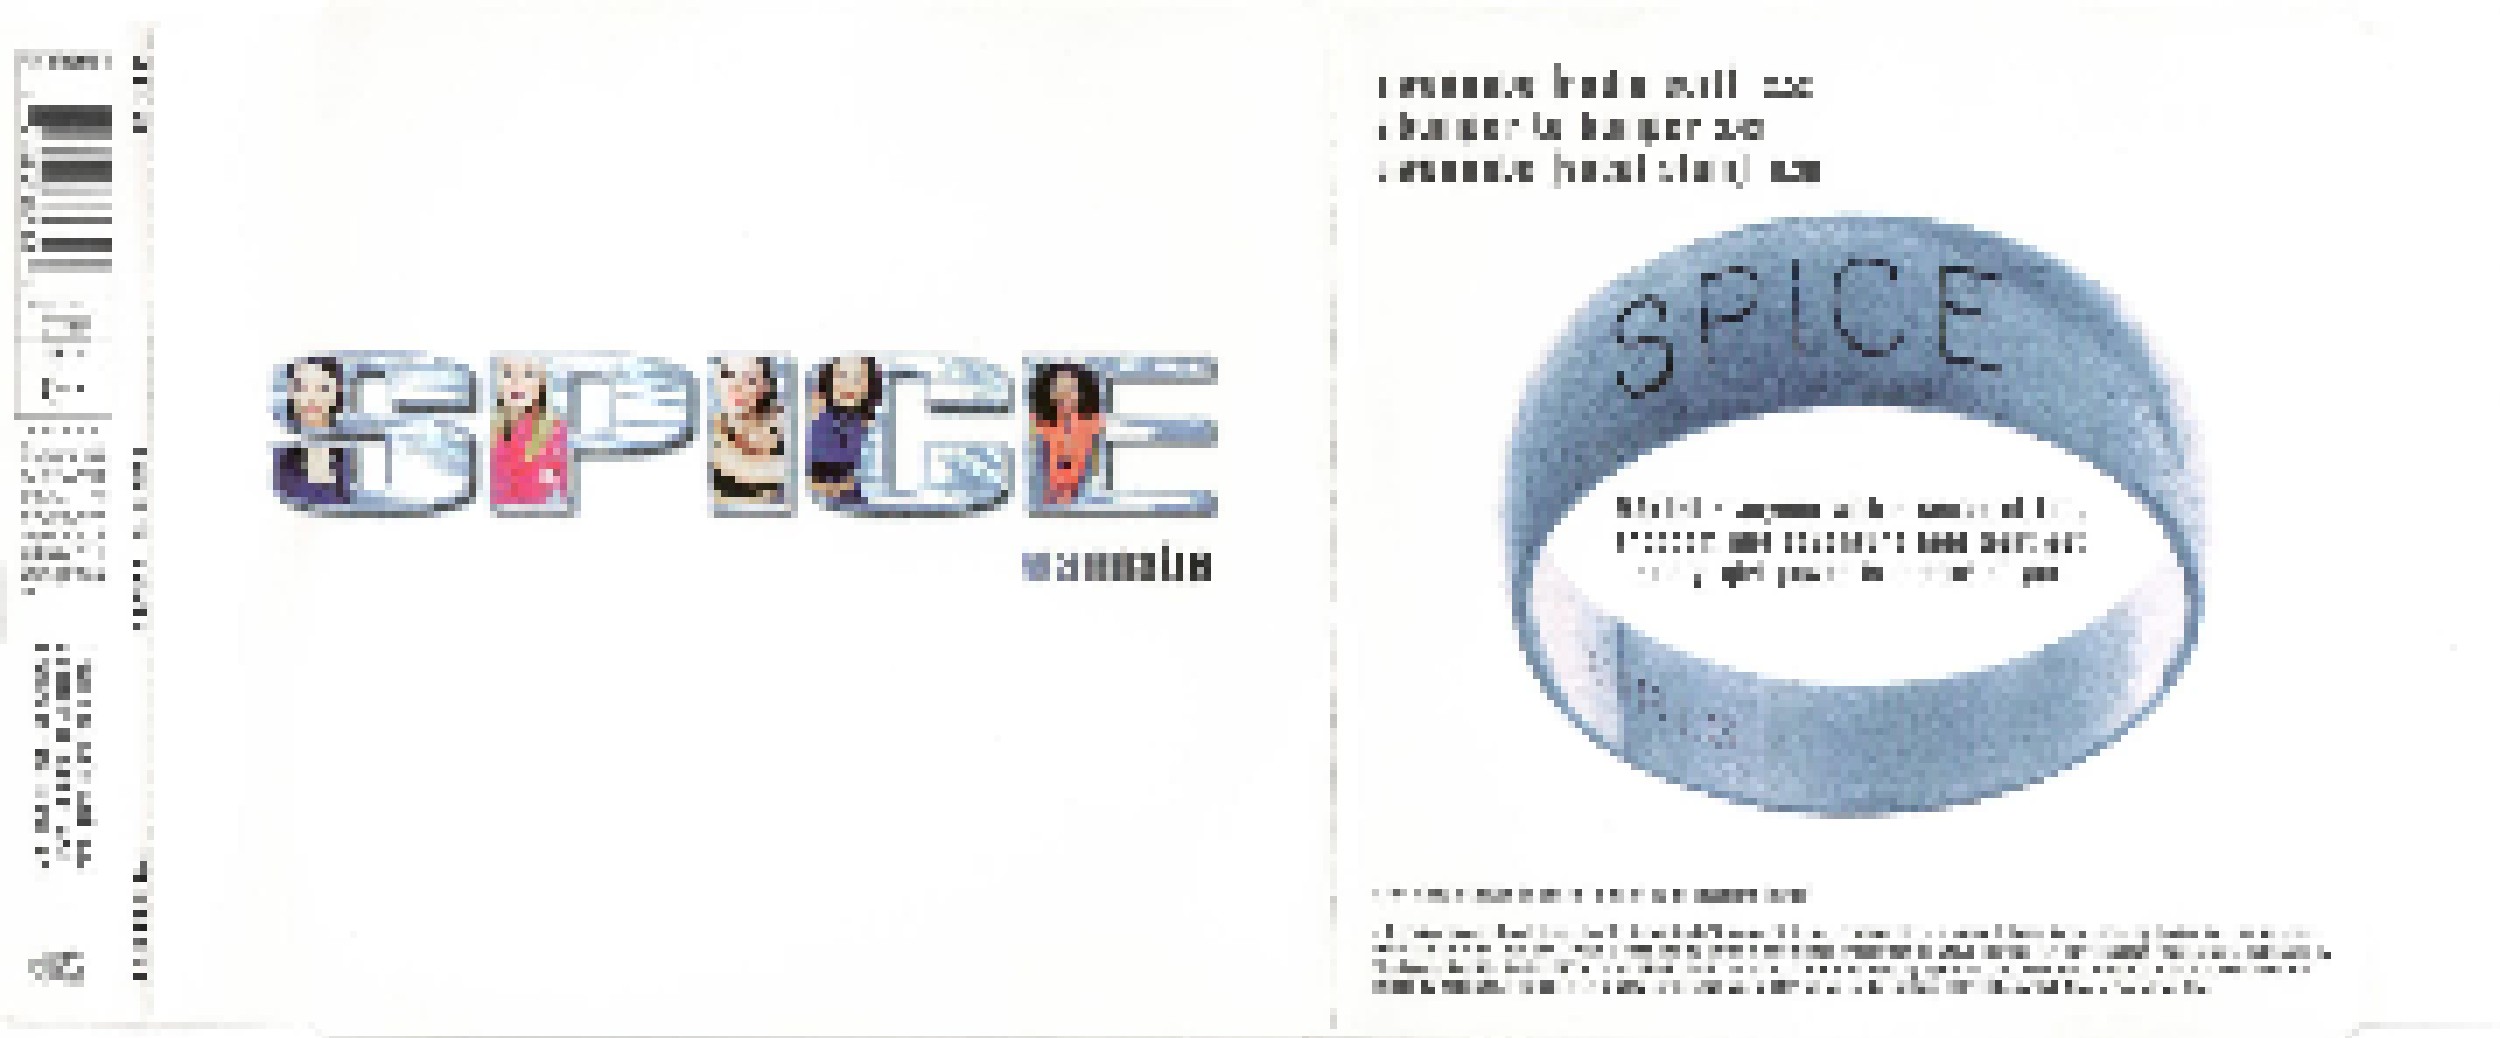 Wannabe Single Cd 1996 Von Spice Girls